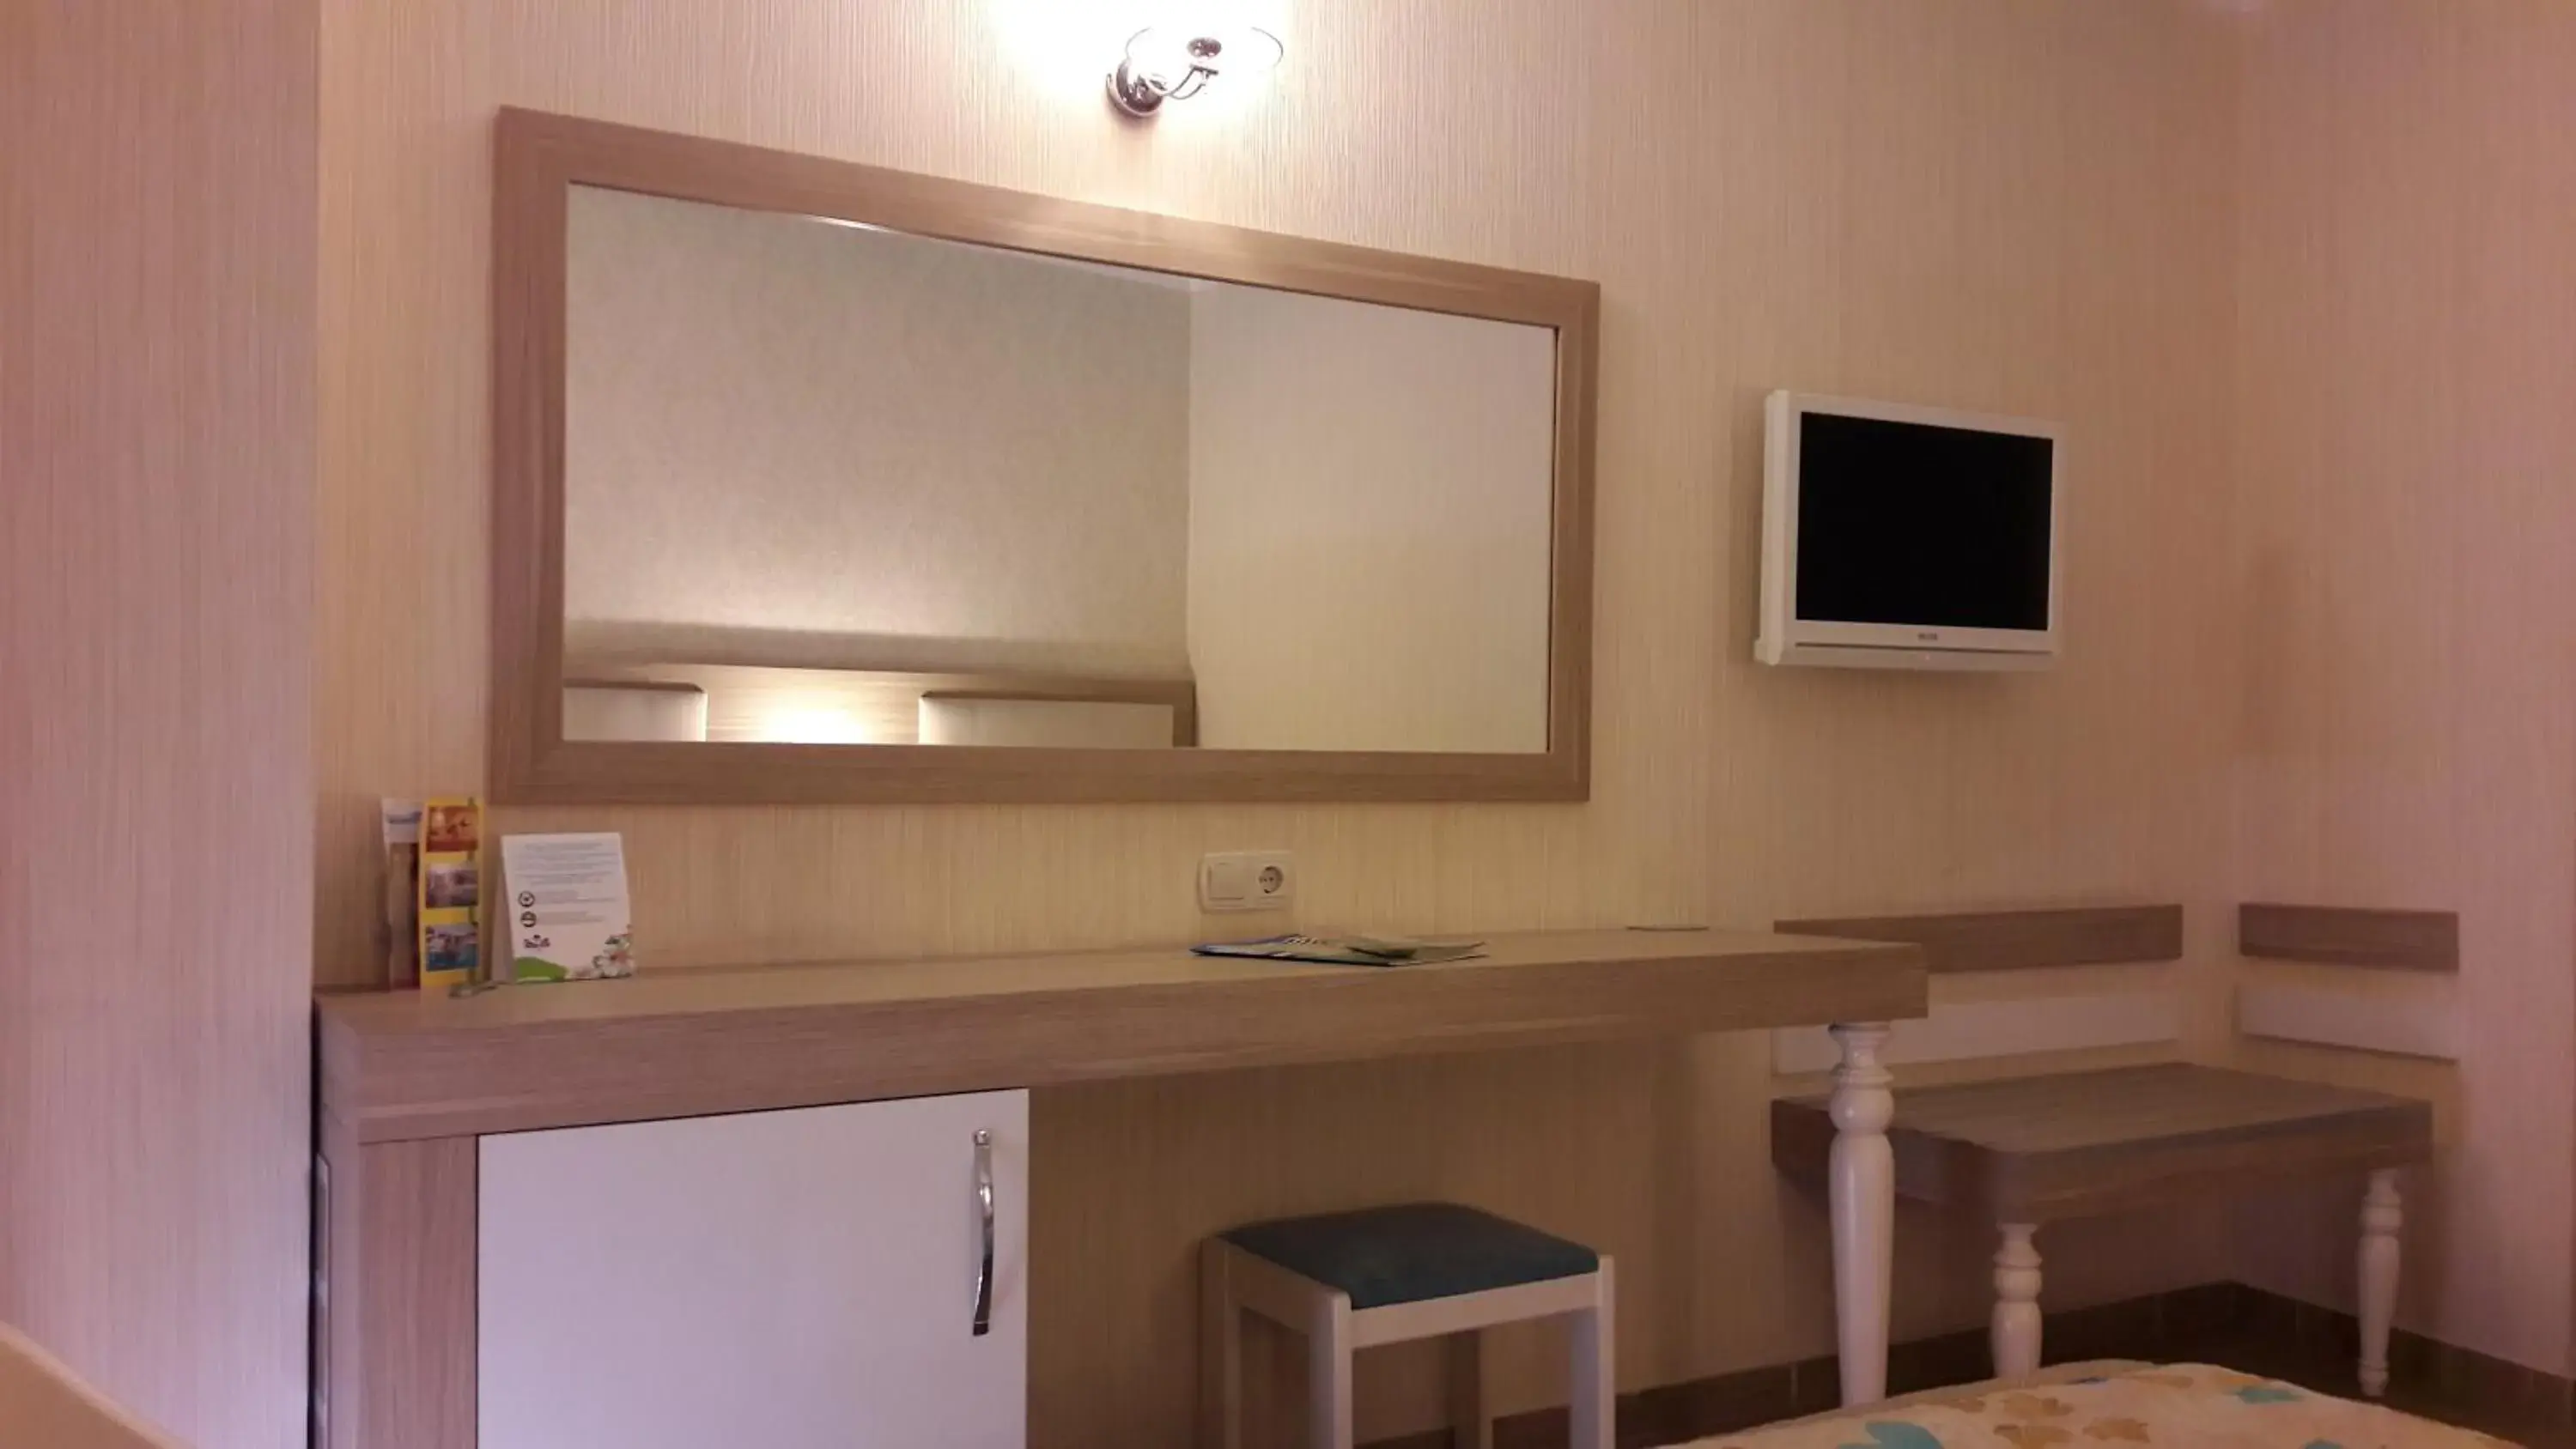 Bedroom, TV/Entertainment Center in Cender Hotel